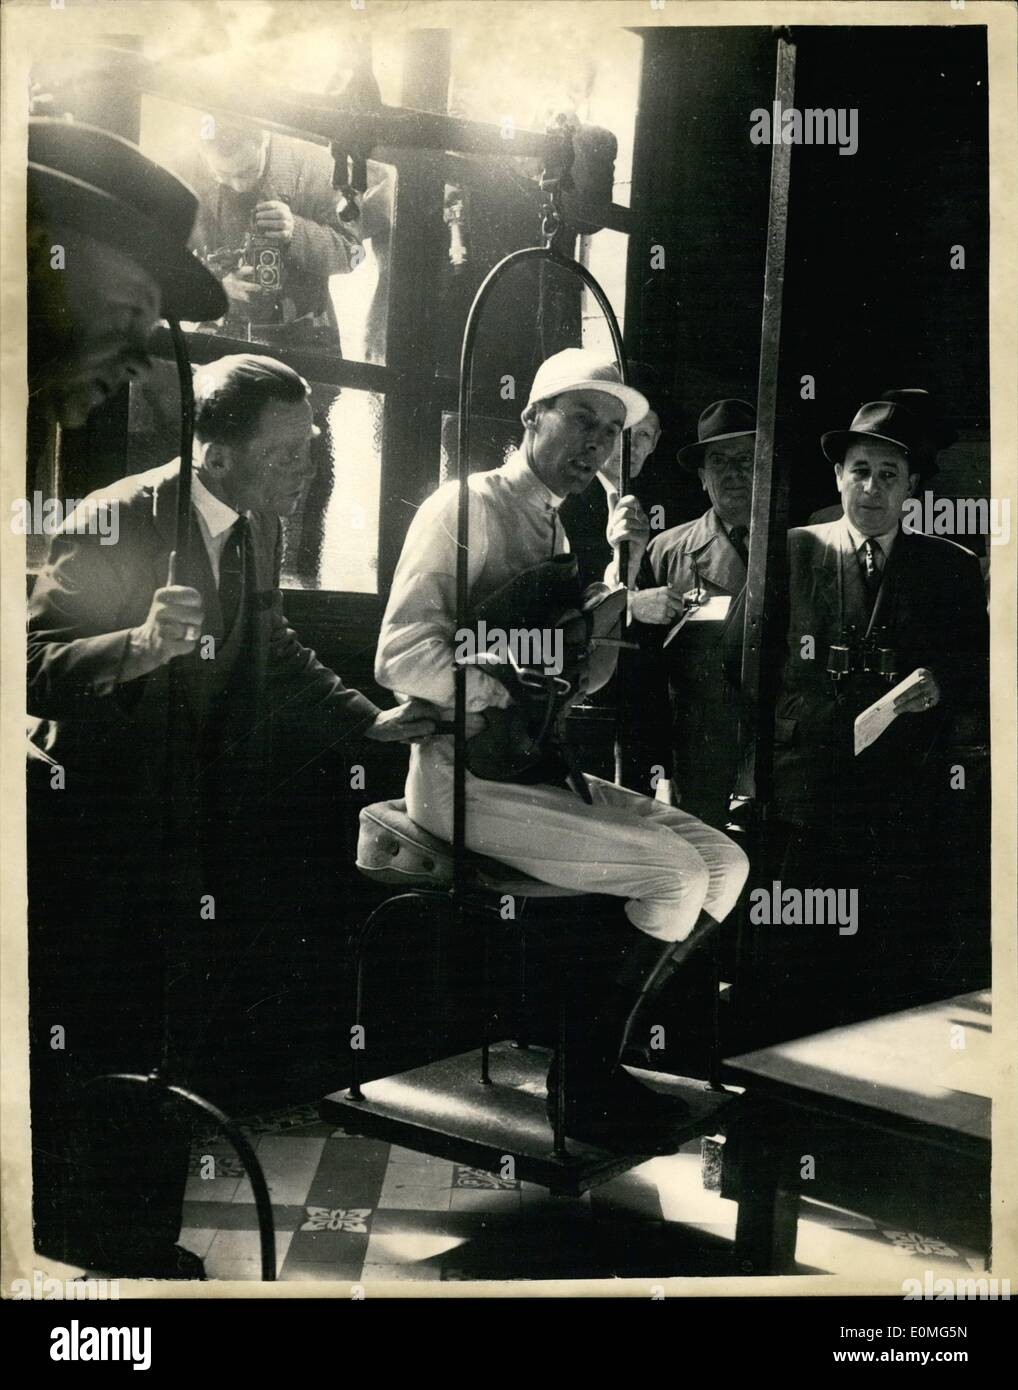 Abril 04, 1955 - El capitán Peter Townsend, entra en una carrera - y gana. Weighing-In: Grupo capitán Peter Townsend ayer tomó parte en una carrera de caballos en Maisons-Laffitte, cerca de París, y ganó en ''Nimrod''. La foto muestra el Capitán Townsend es ''pesado'' para la carrera. Foto de stock